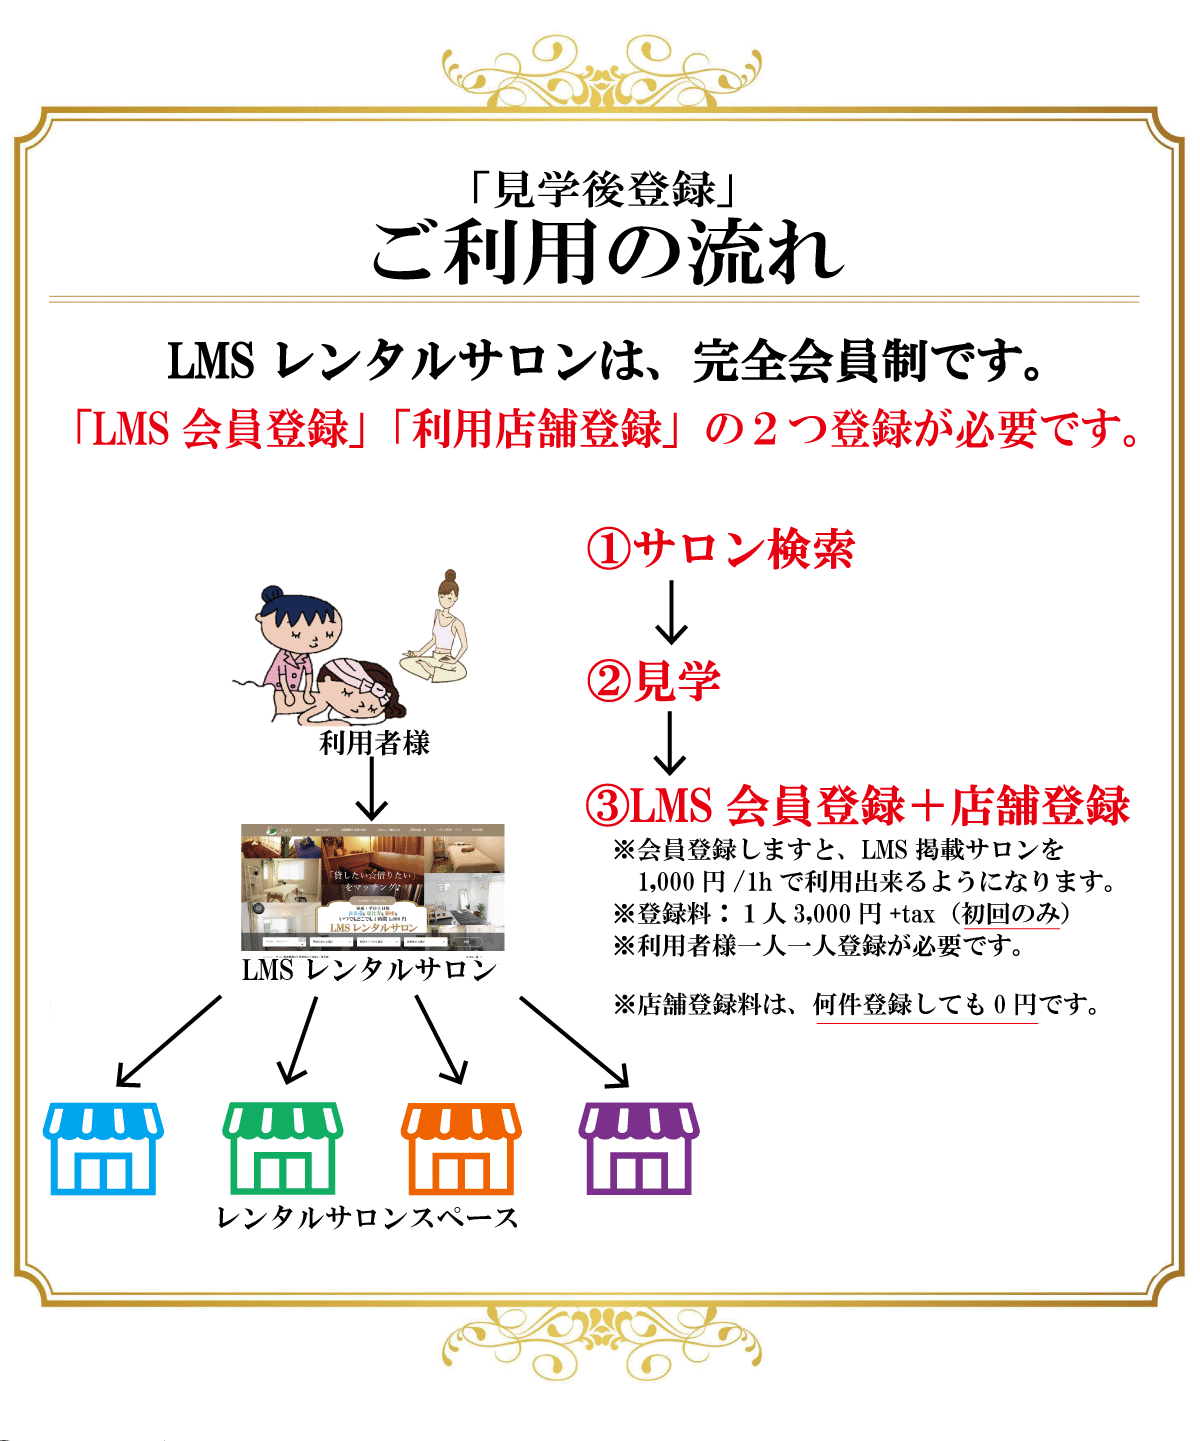 レンタルサロンエステ開業新宿駅個室駅安人気